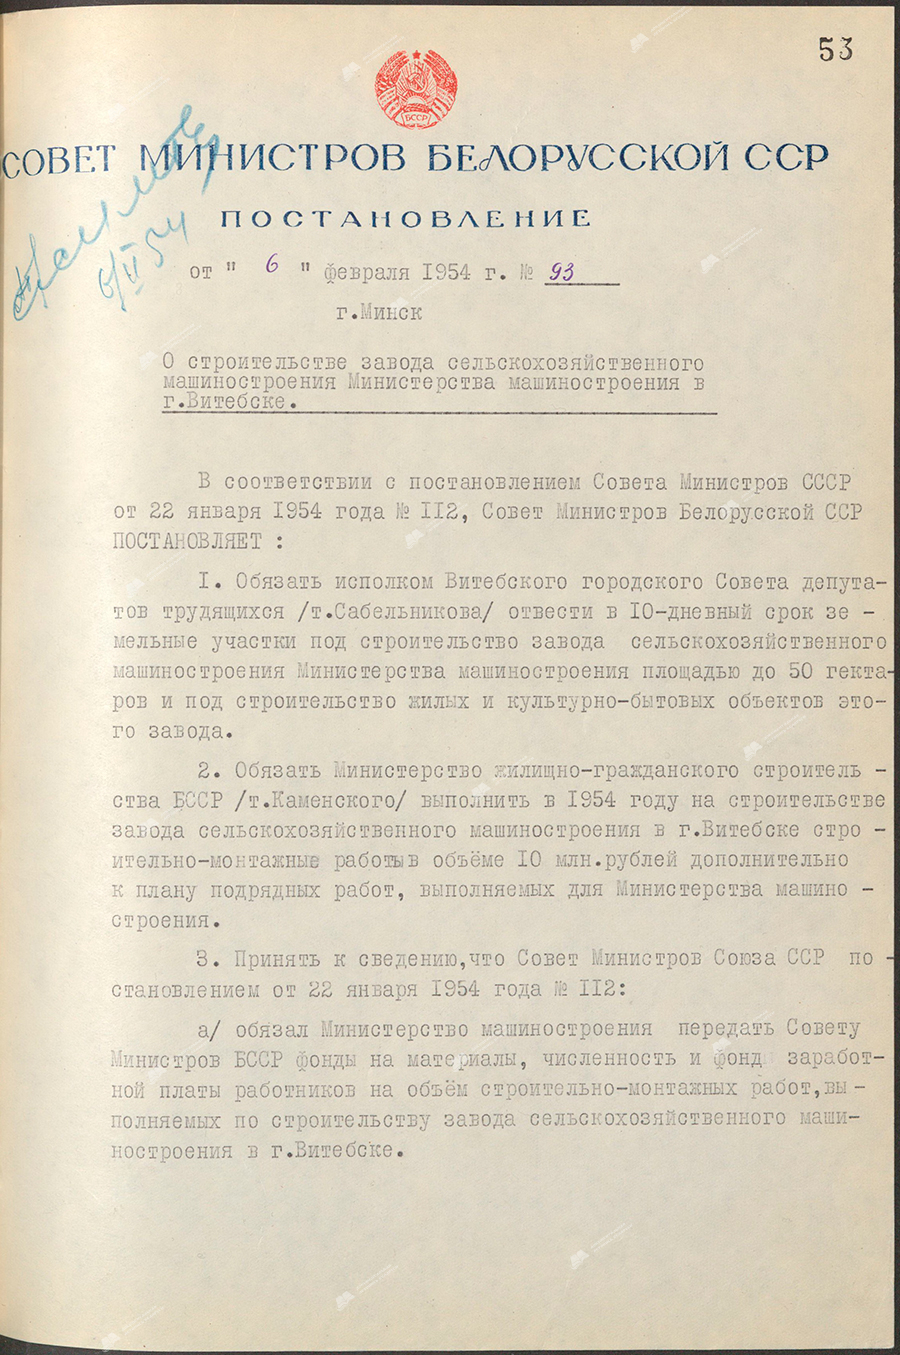 Beschluss Nr. 93 des Ministerrats der Weißrussischen SSR «Über den Bau eines landwirtschaftlichen Maschinenwerks des Ministeriums für Maschinenbau in Witebsk»-с. 0